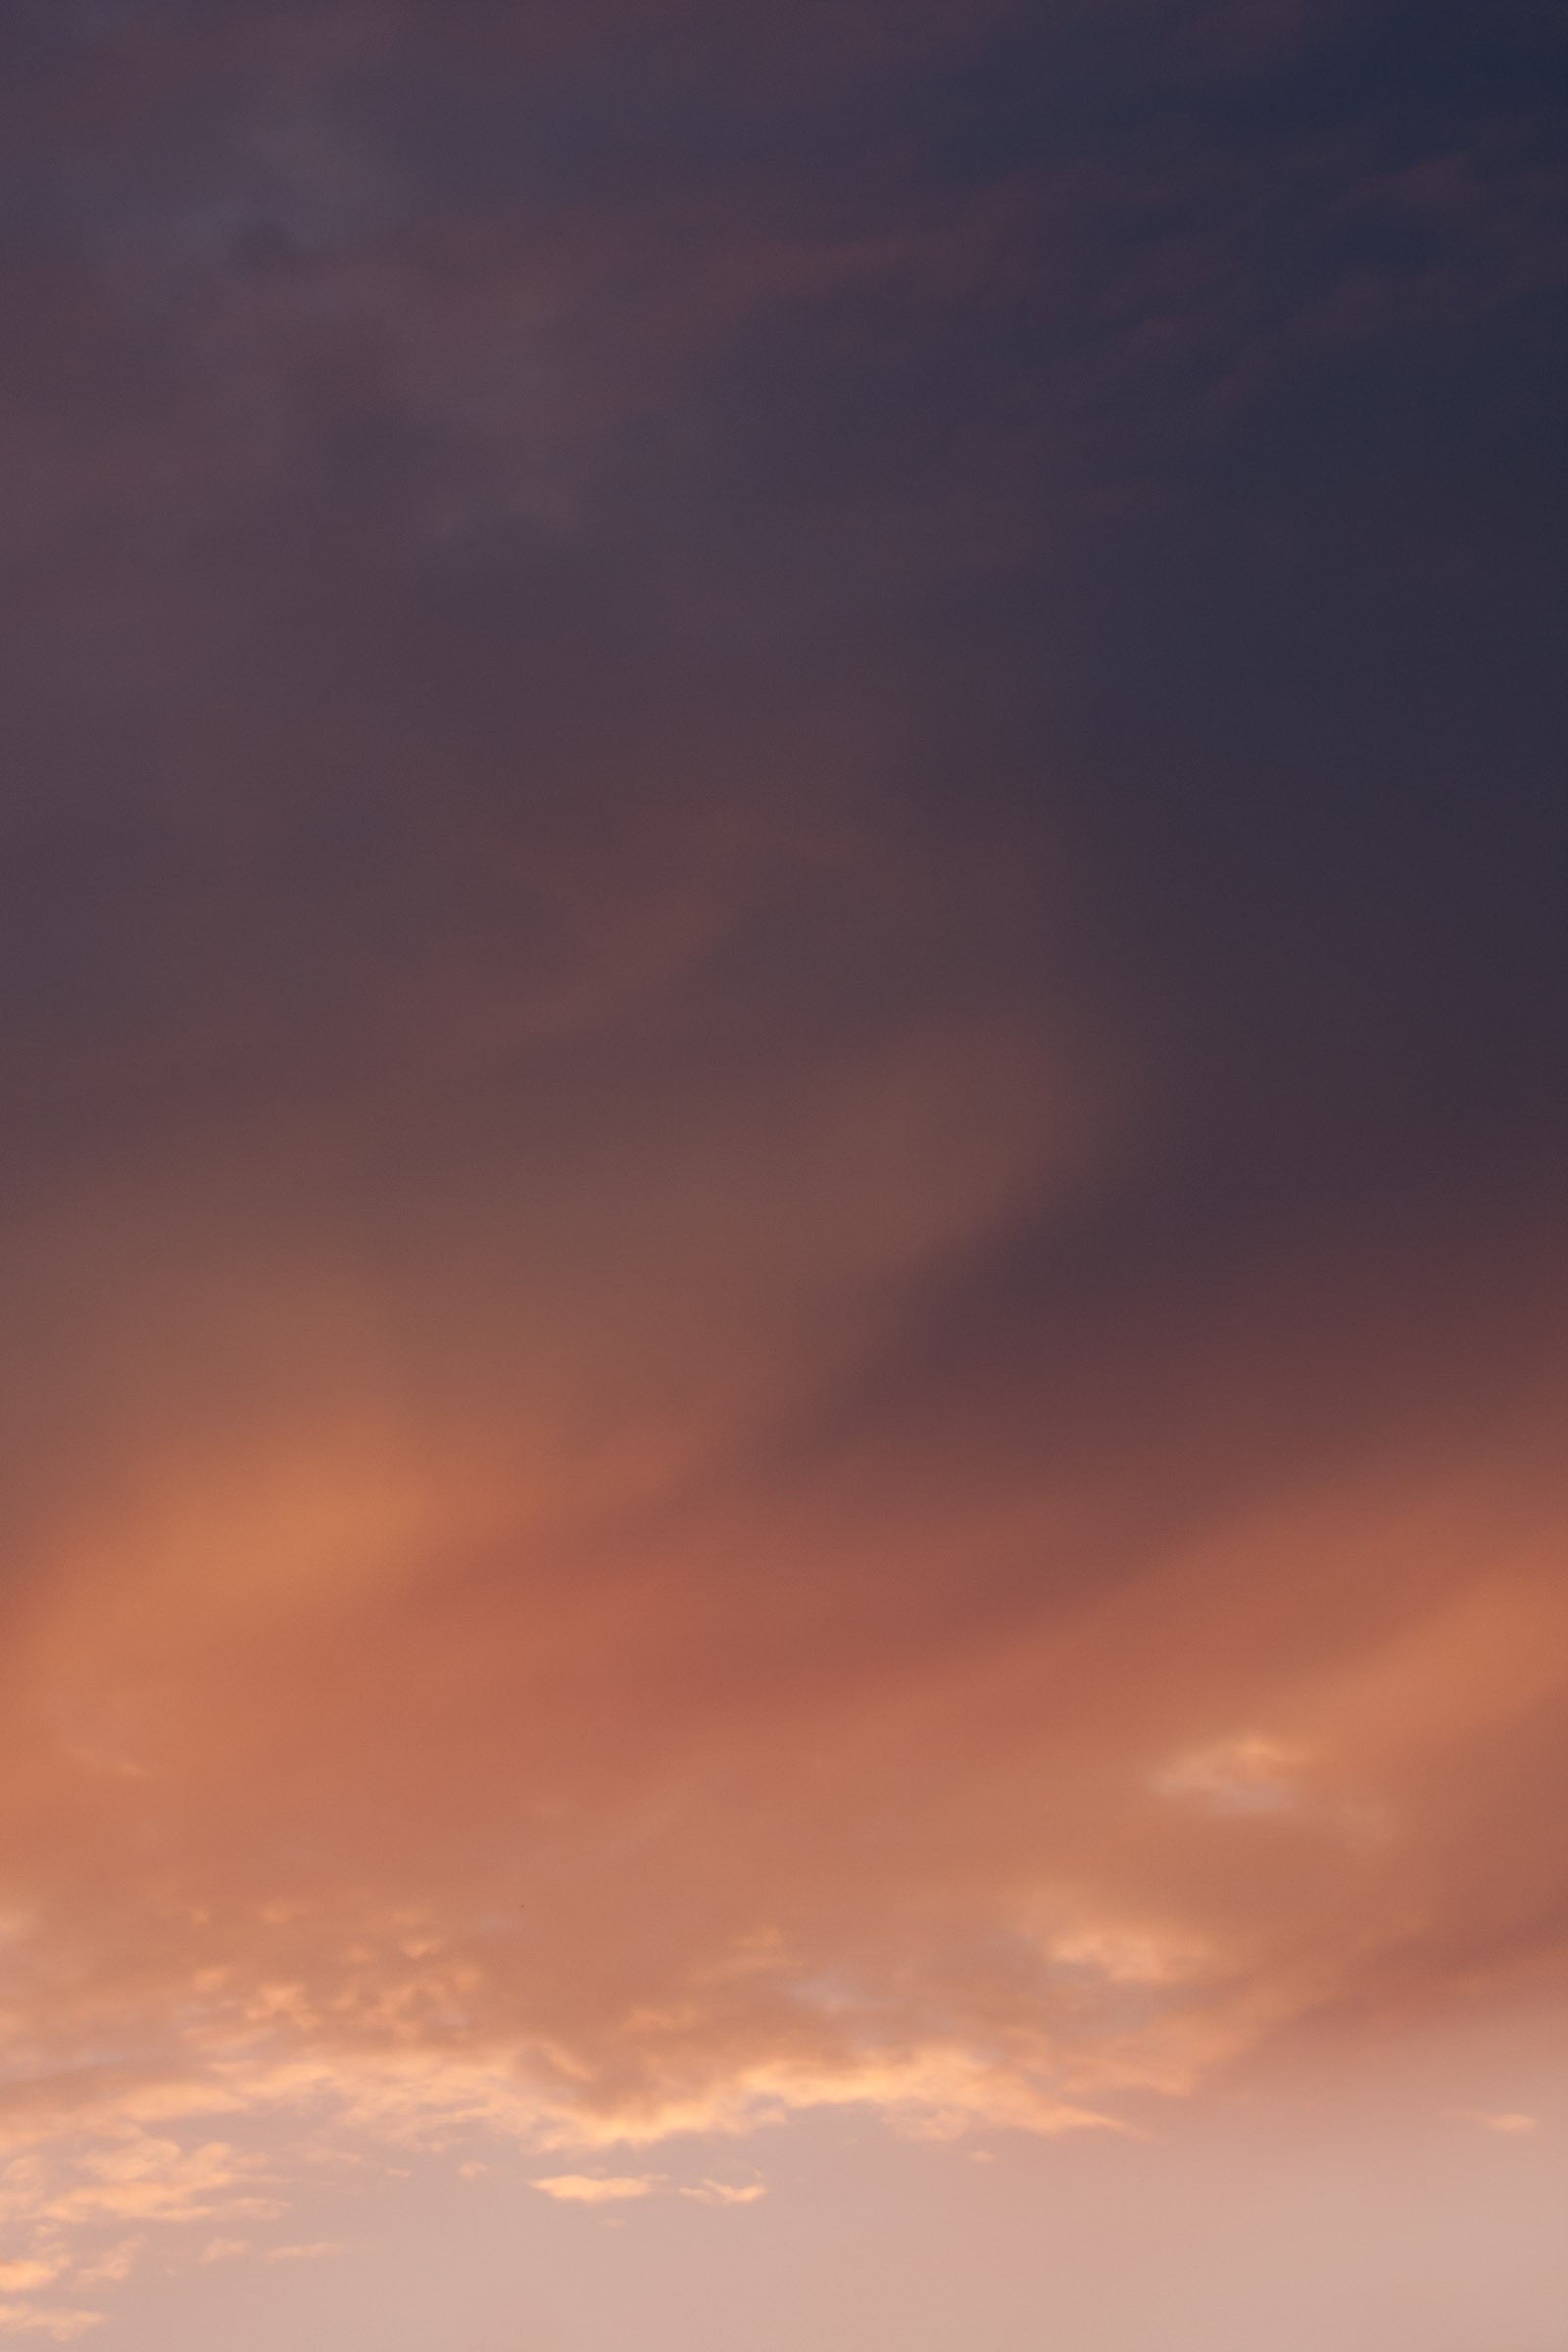 グラデーションが綺麗な夕焼け雲のフリー写真素材 イメージガレージ